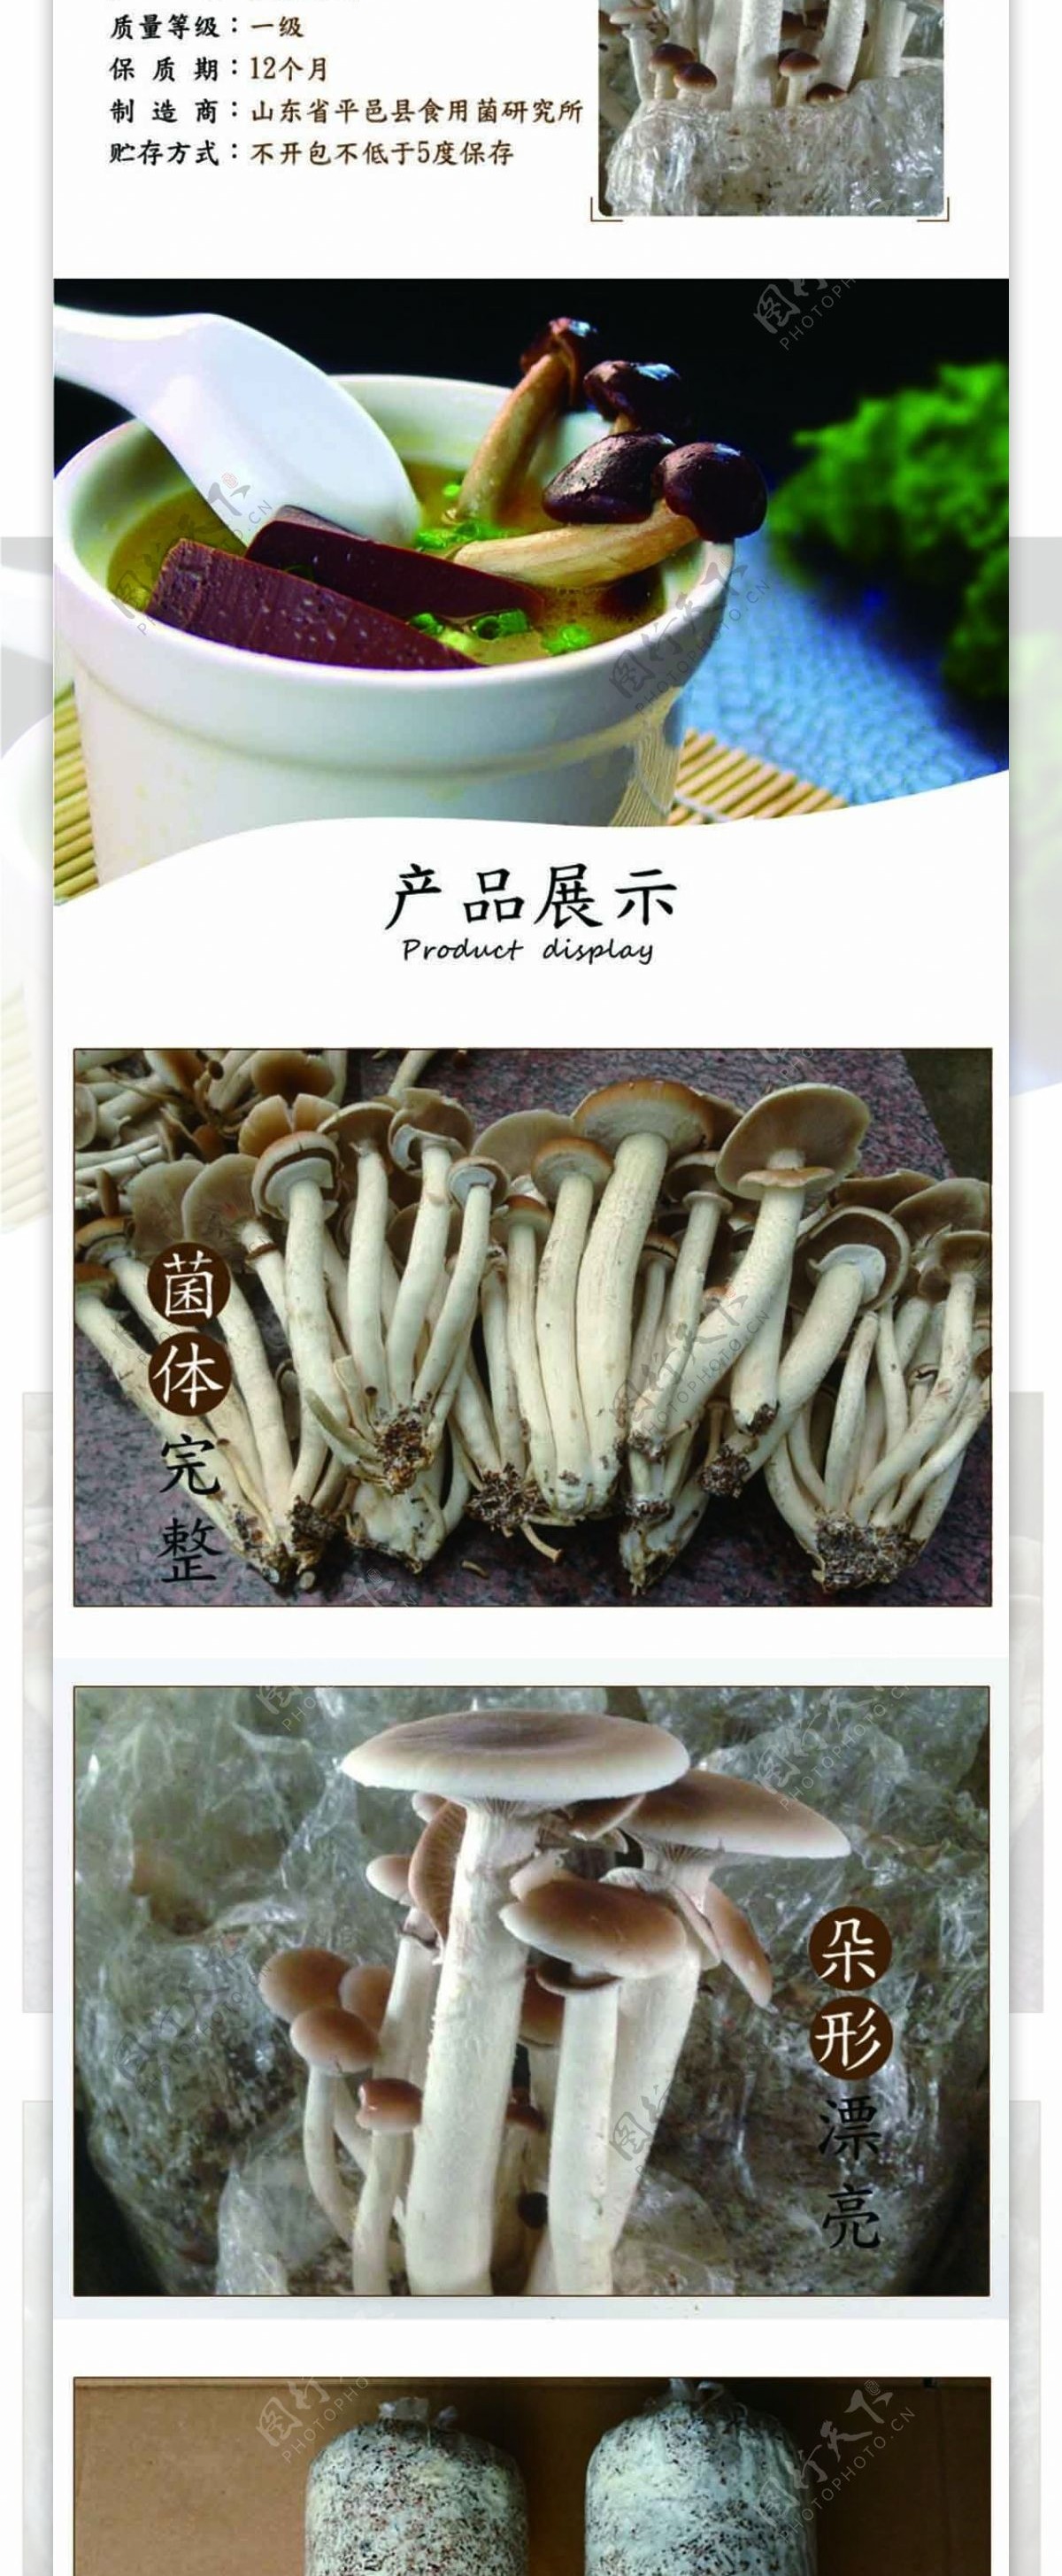 淘宝茶树菇详情页模版